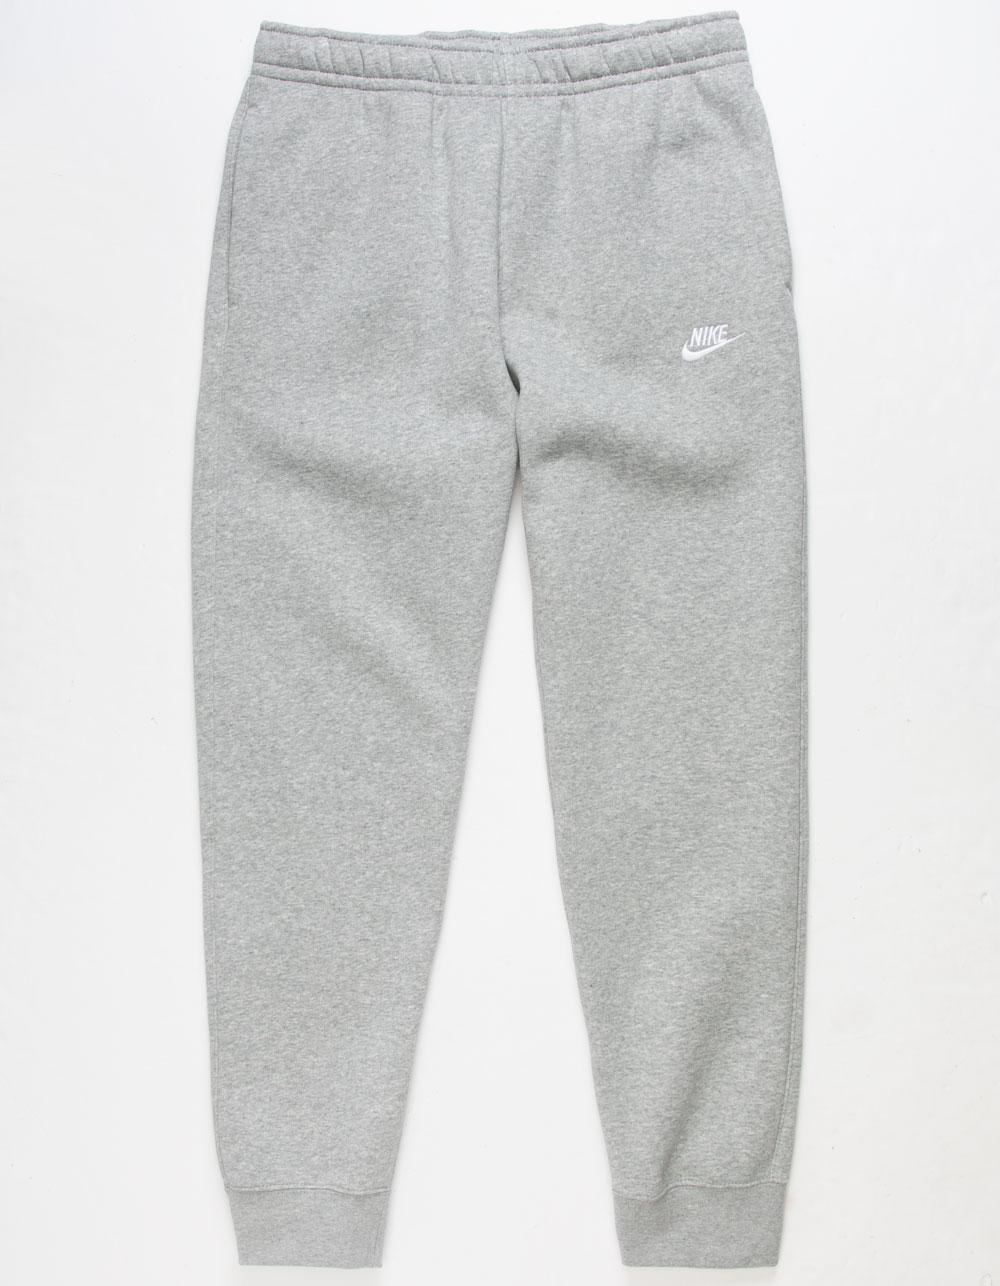 Nike Essentials cuffed sweatpants in white heather